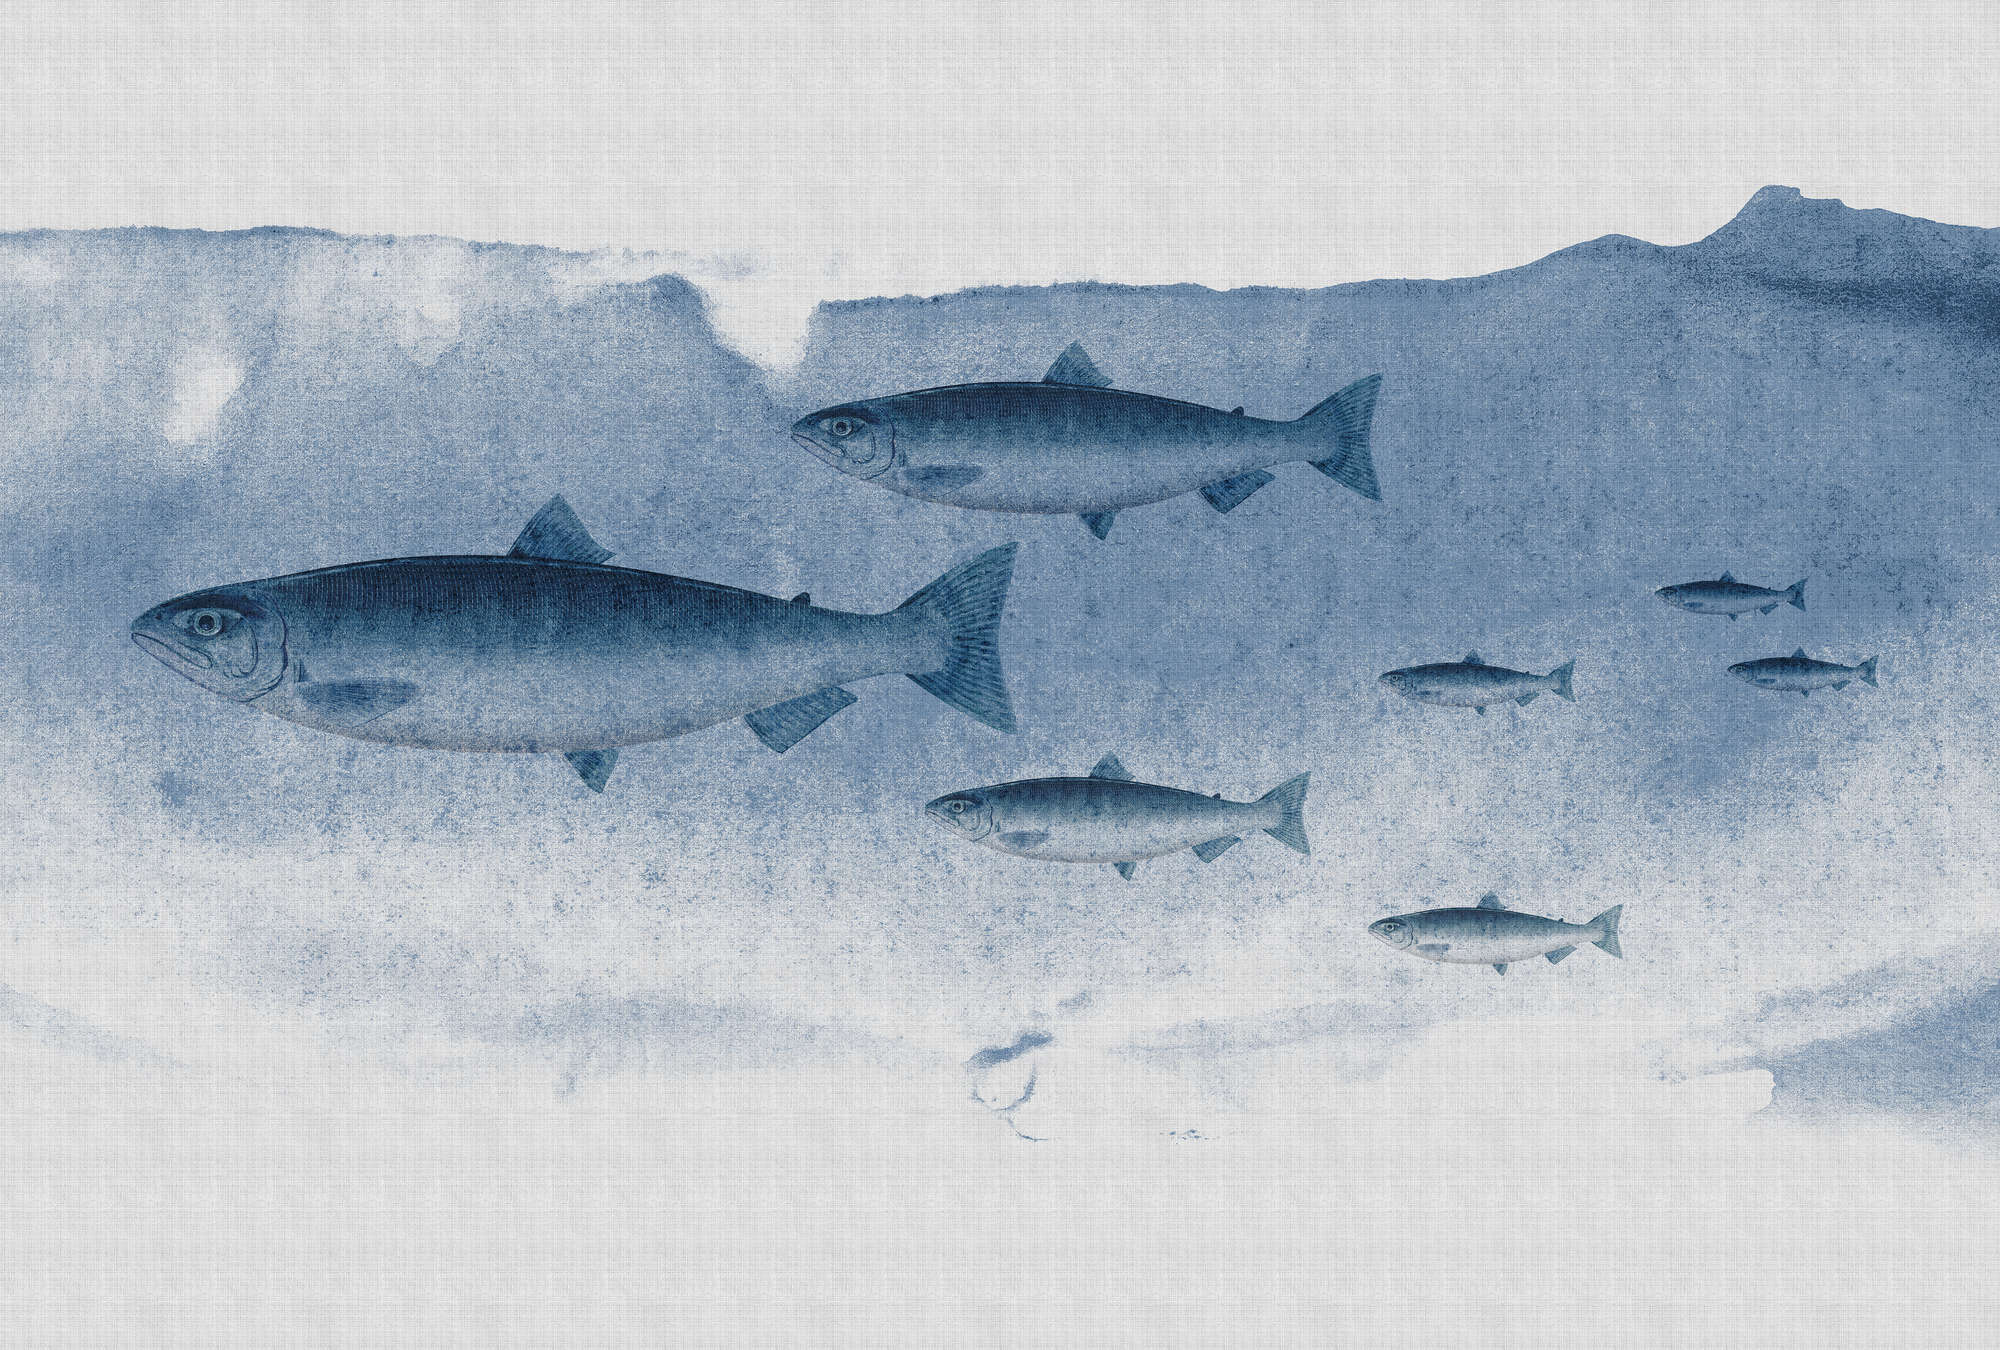             Into the blue 1 - Acquerello di pesce in blu come carta da parati fotografica in struttura di lino naturale - Blu, Grigio | Natura qualita consistenza in tessuto non tessuto
        